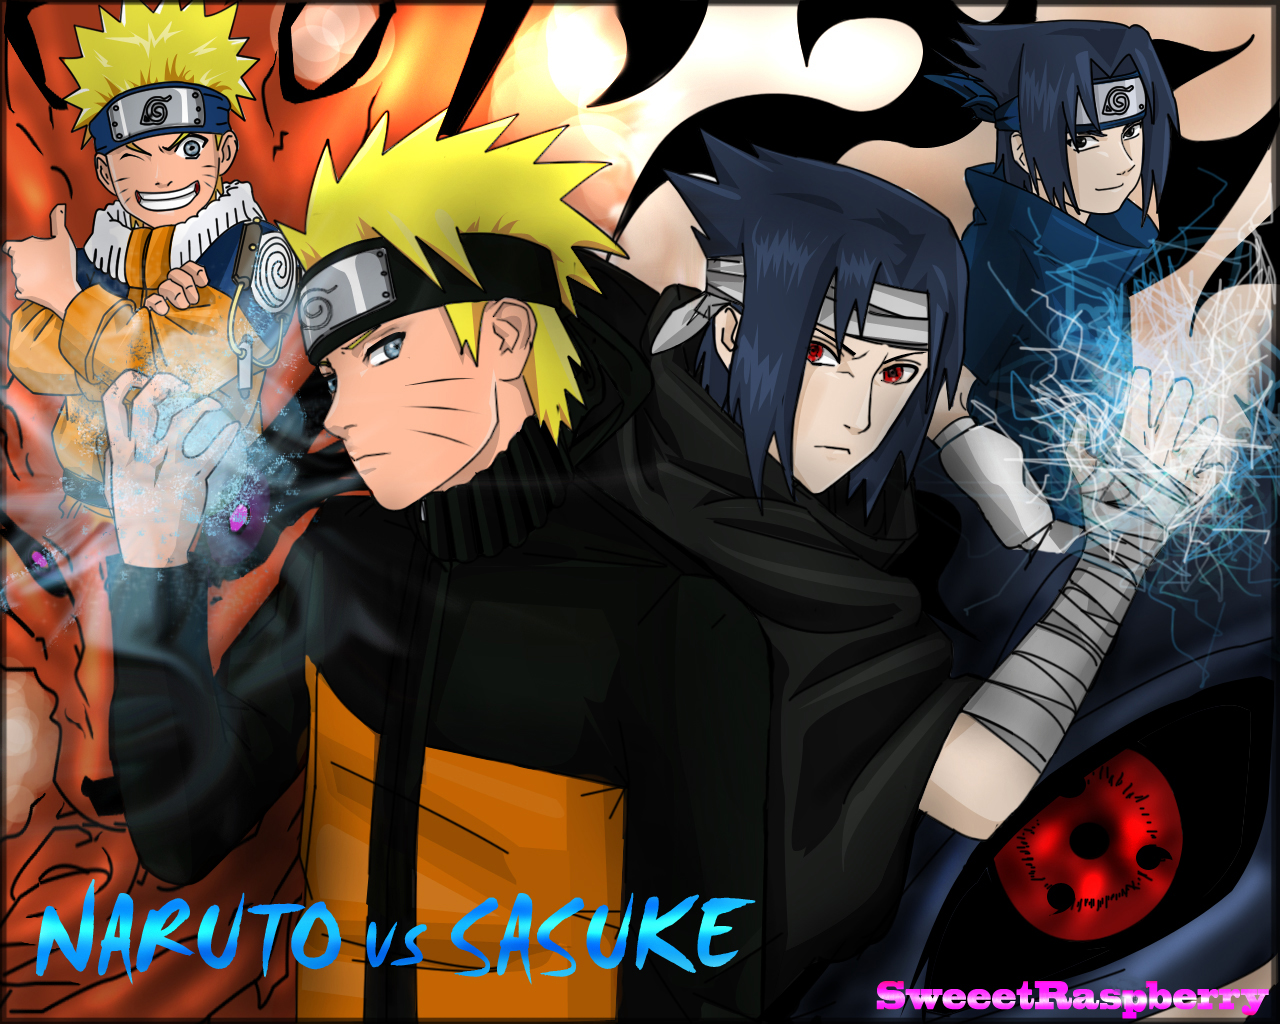 Kumpulan Gambar  Picture Naruto  Vs  Sasuke  Cyber Shaper 